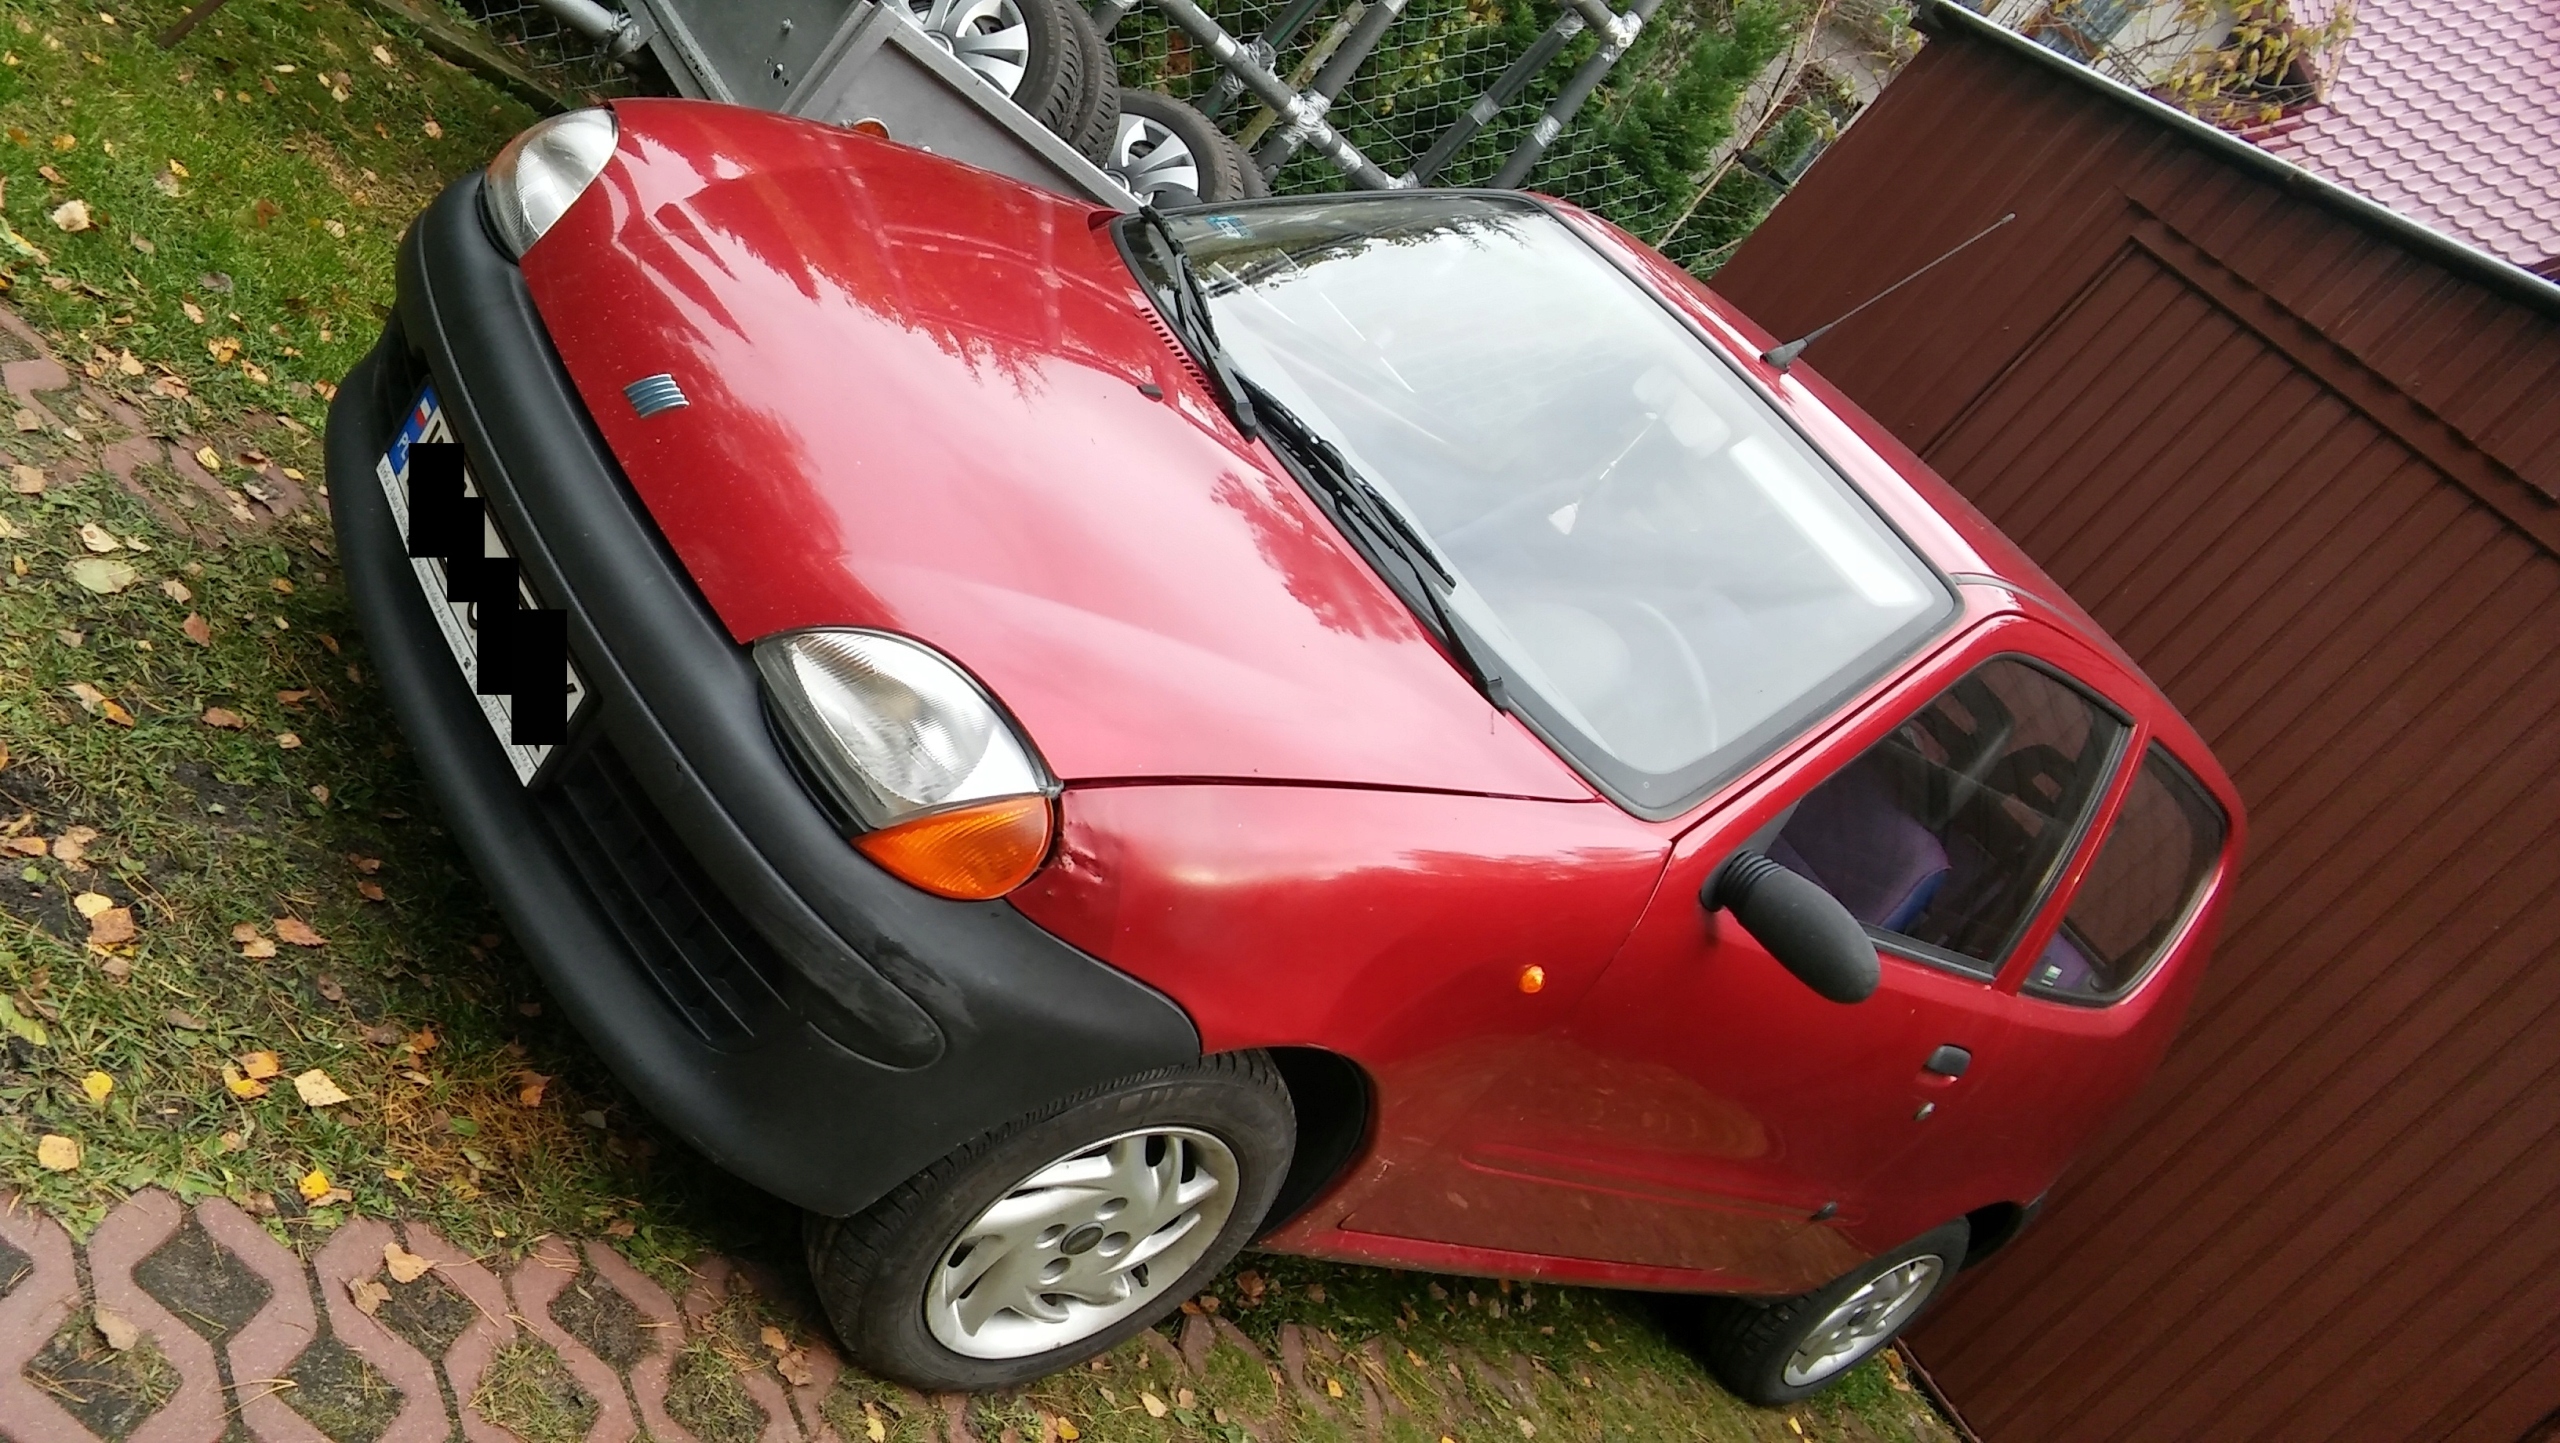 samochód osobowy Fiat Seicento 1.1 r. 1999 7644529083